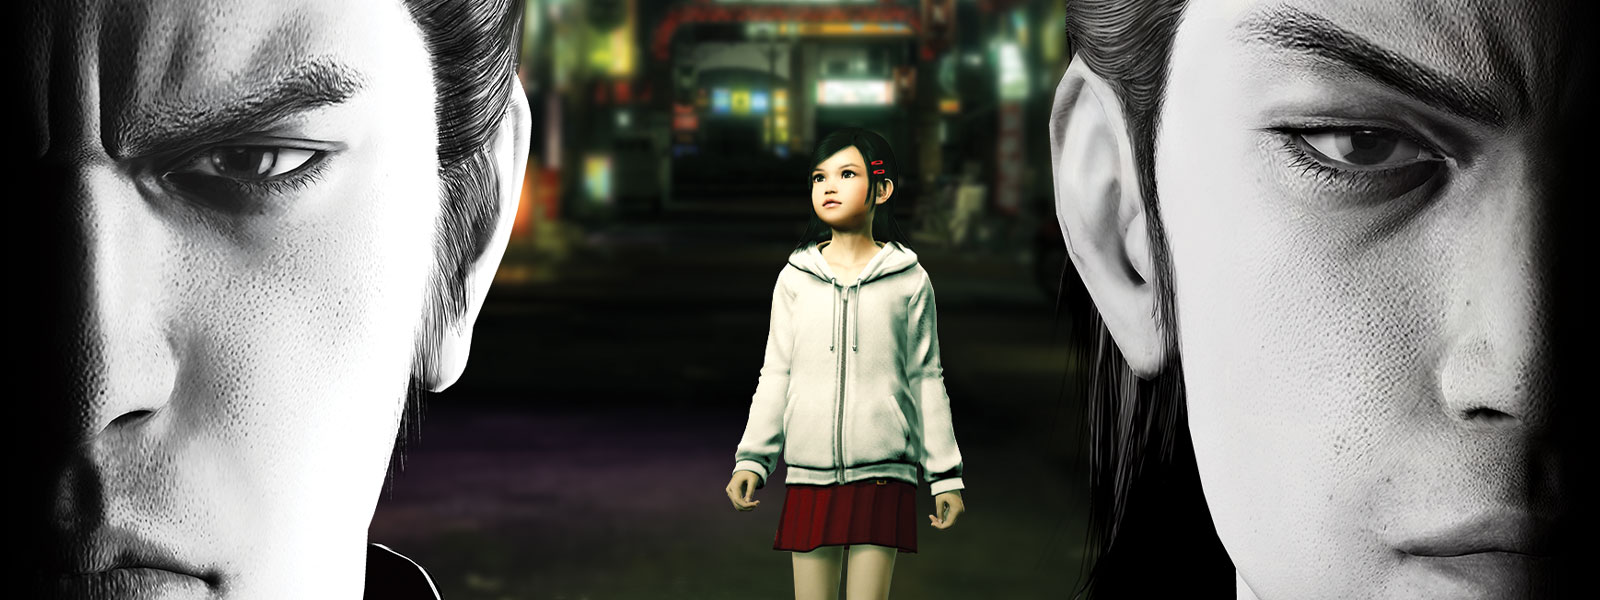 Twee Yakuza-personages staren somber voor zich uit, terwijl een klein meisje in de stad achter hen staat.